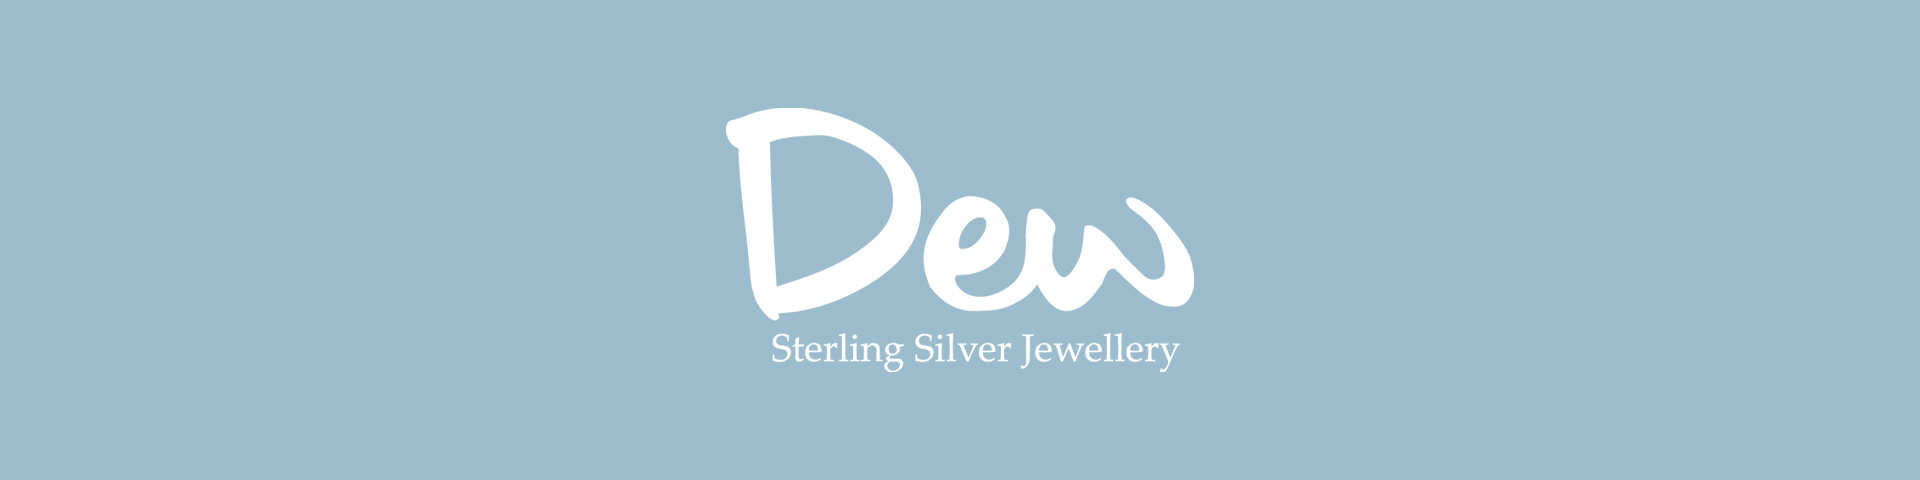 Dew Sterling Silver Jewellery logo